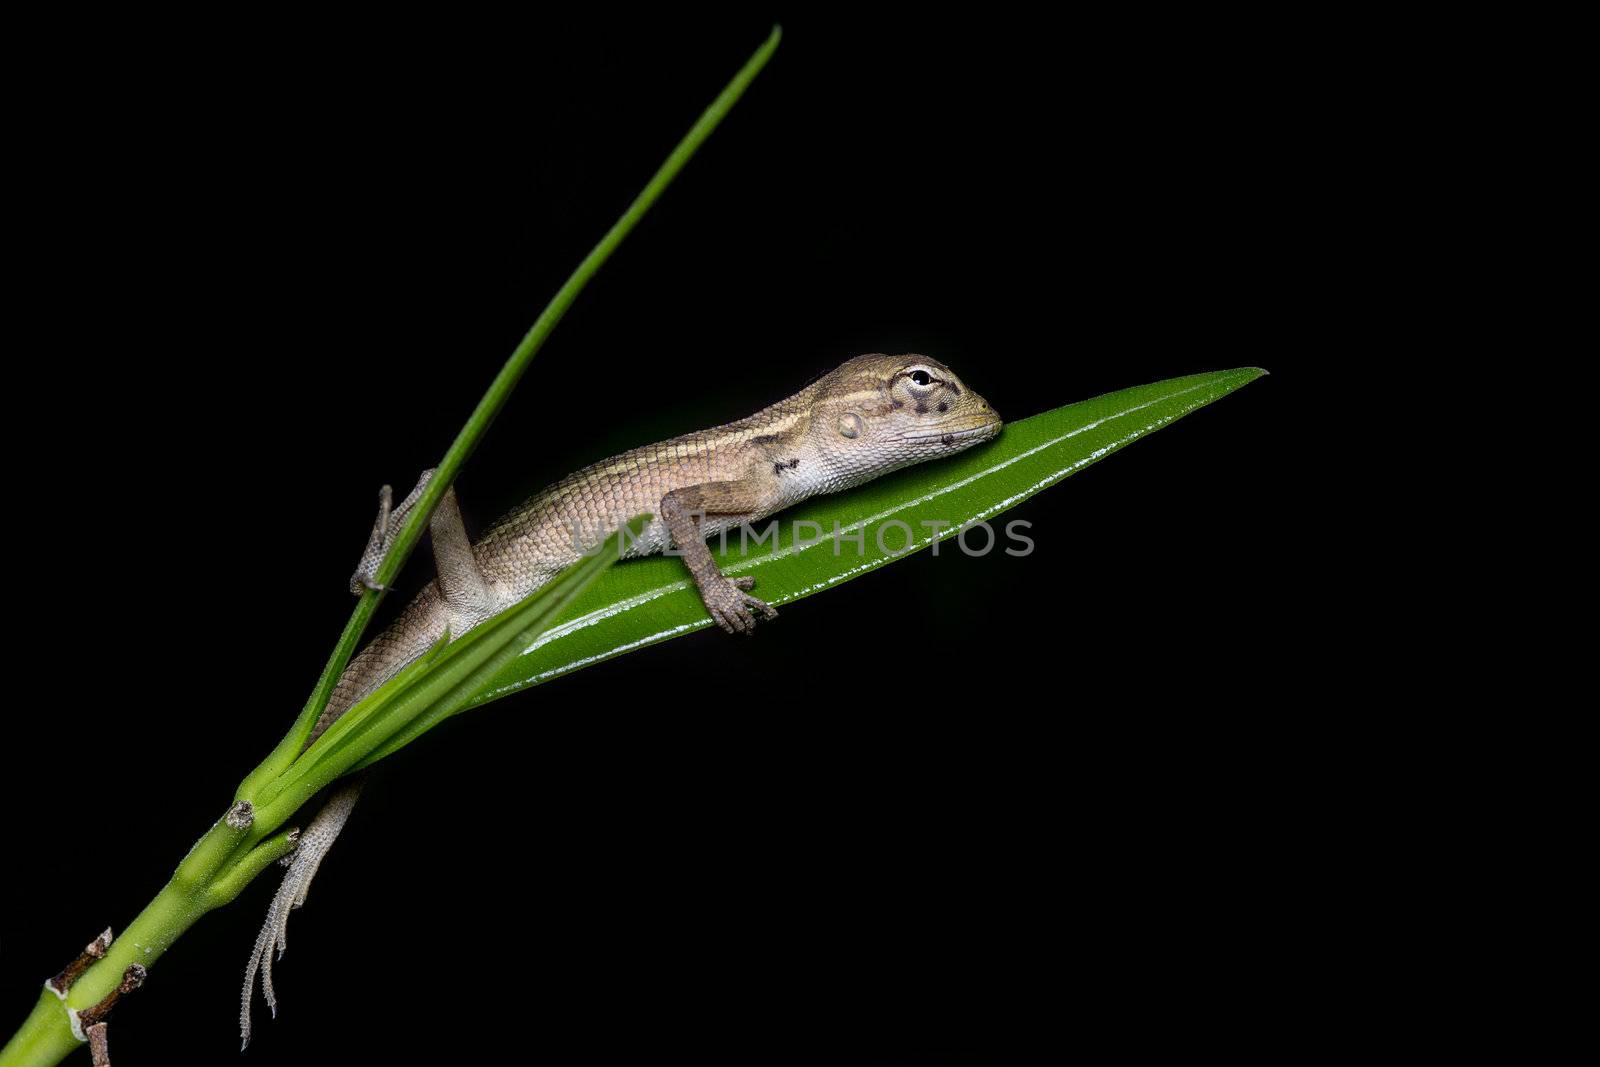 A juvenile indian garden lizard feeling very cozy